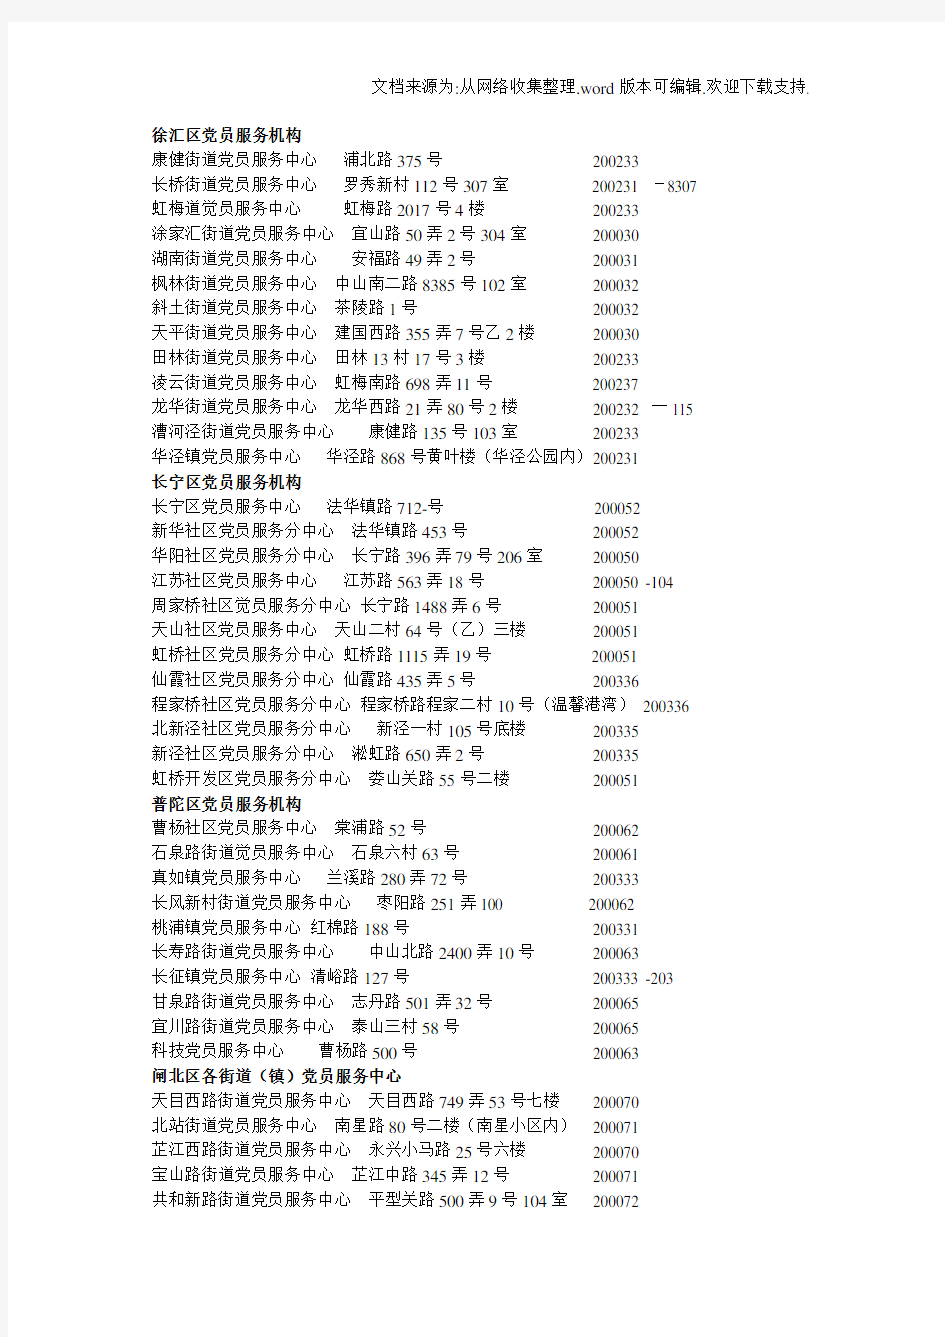 上海党员服务中心一览表